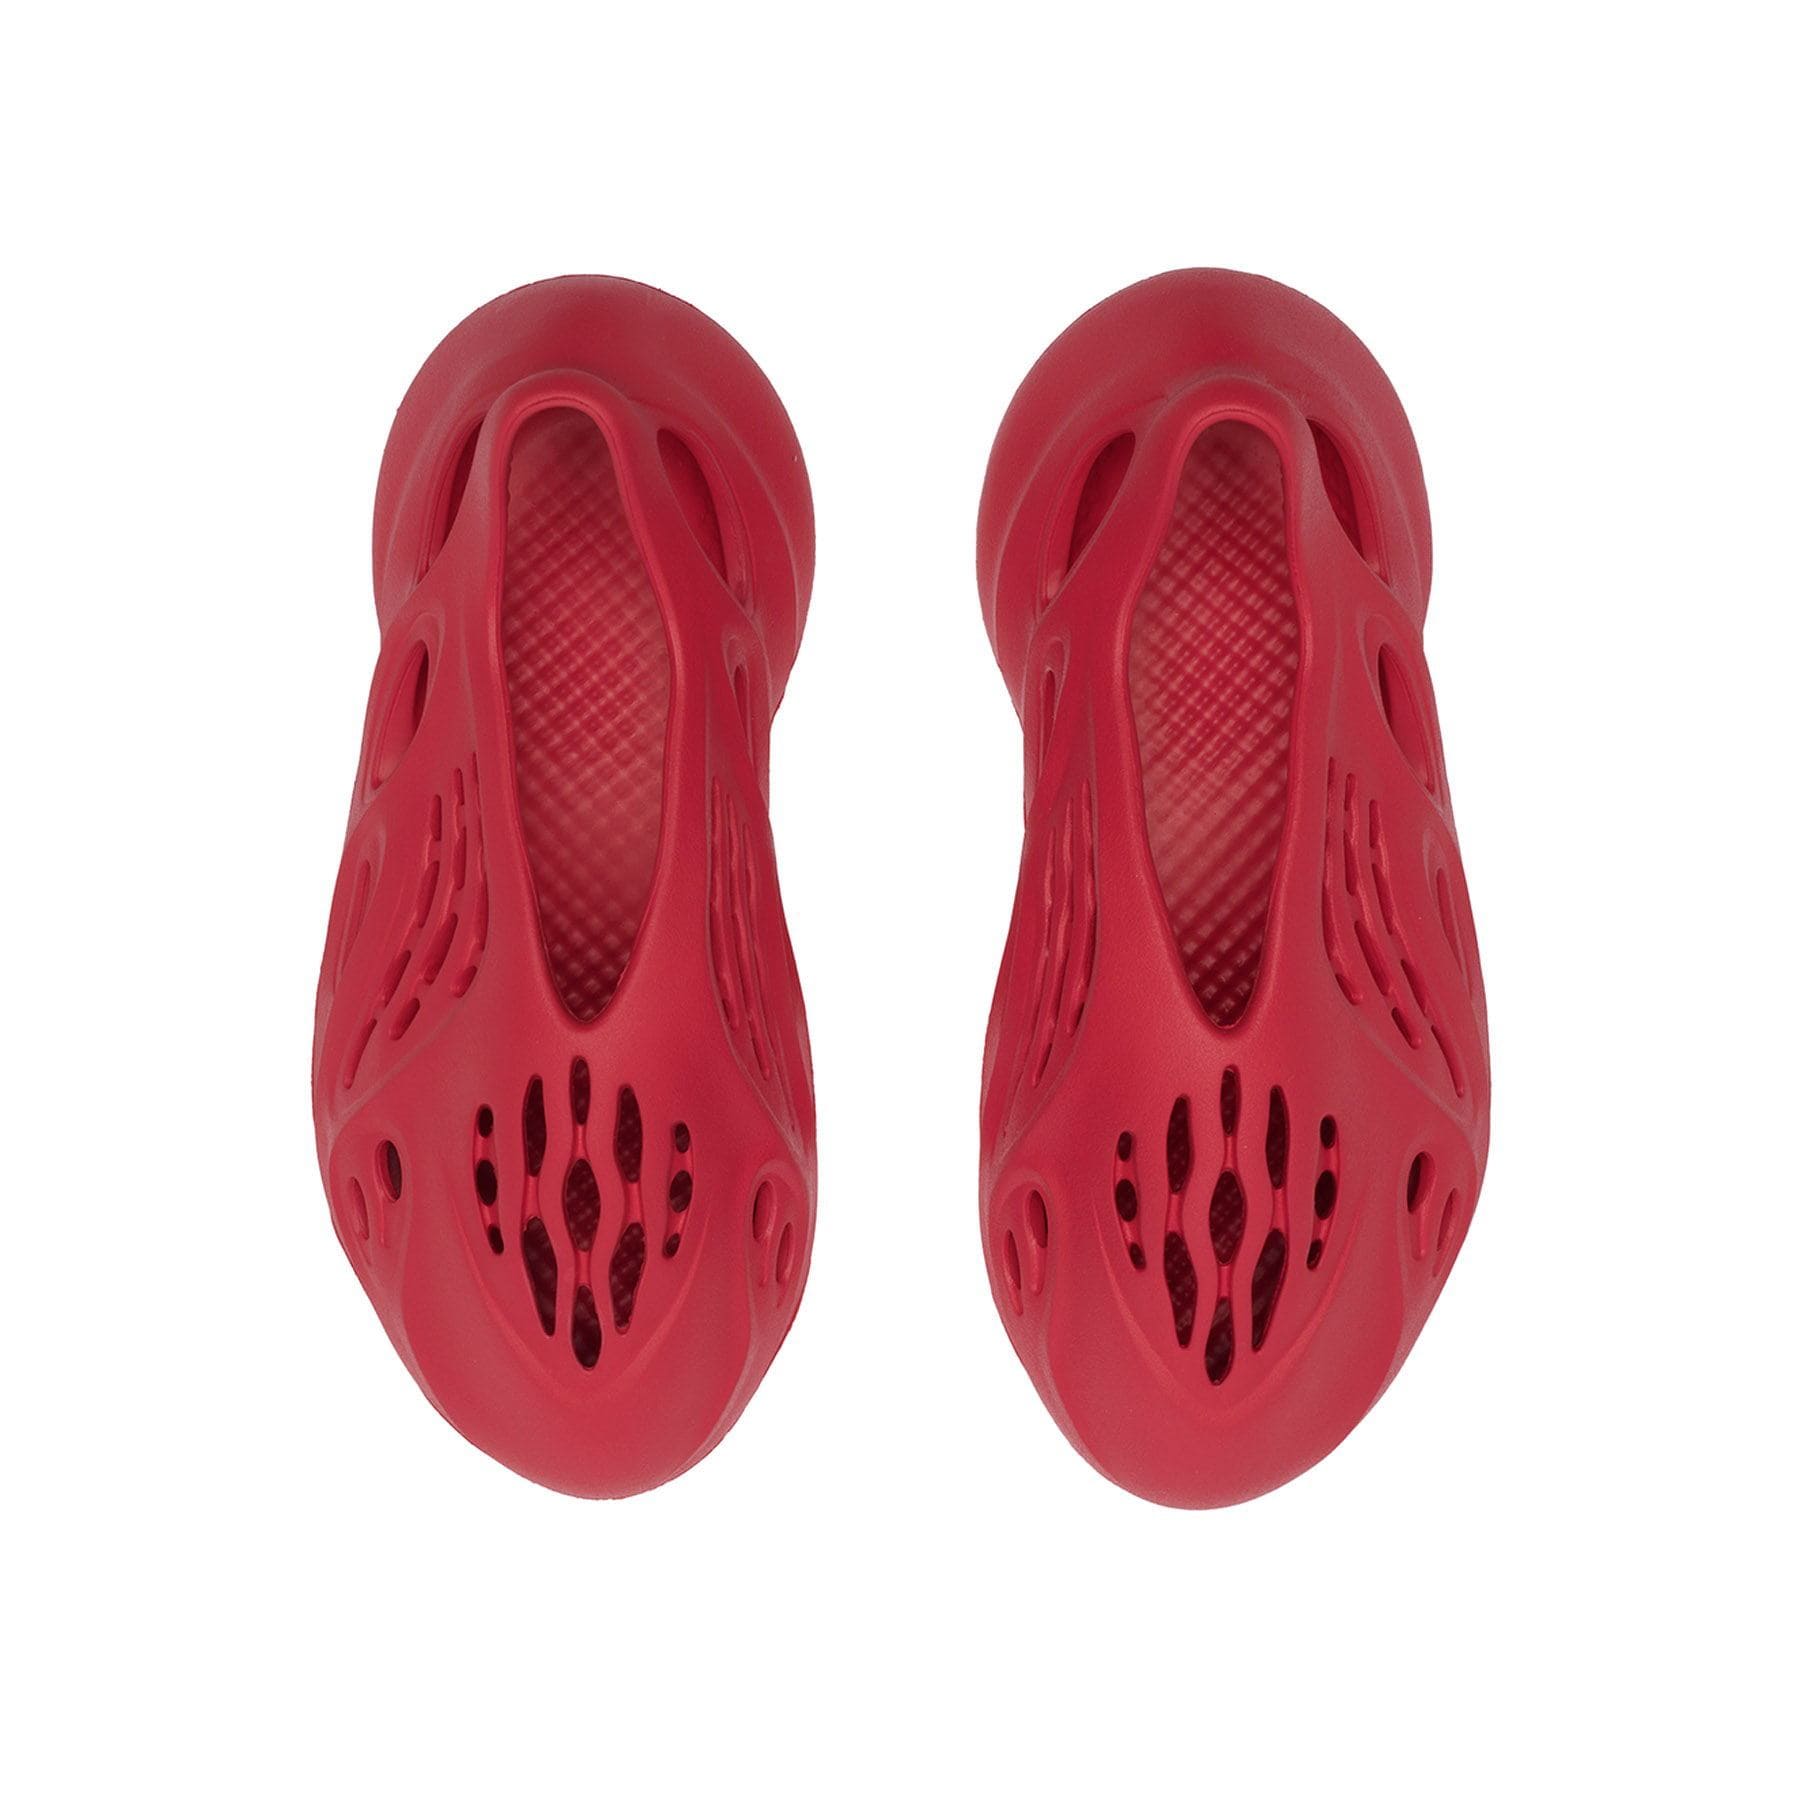 adidas Yeezy Foam Runner 'Vermilion' — Kick Game